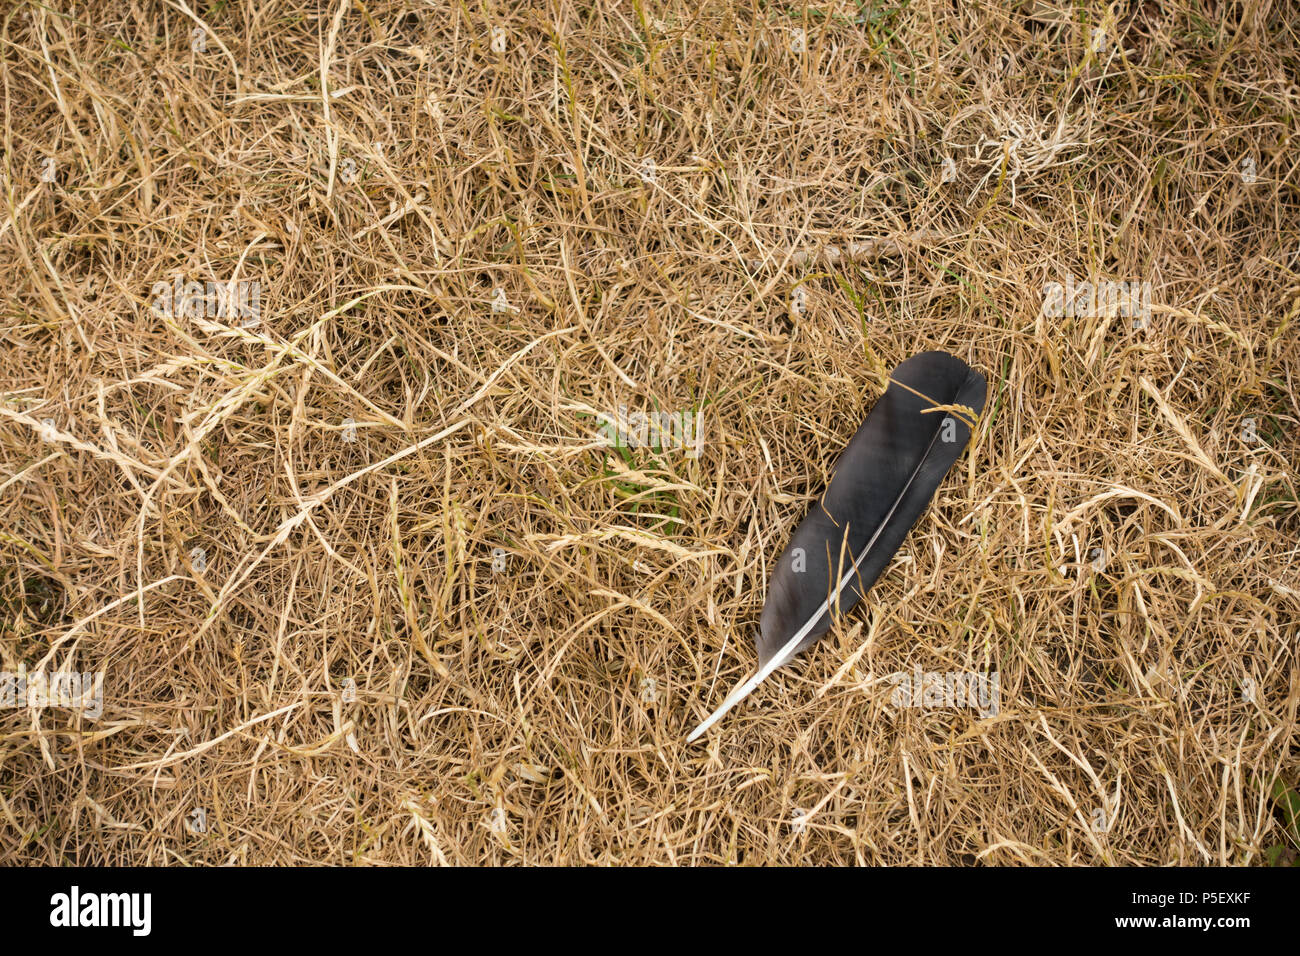 Un carrion crow feather acostado sobre pasto seco, REINO UNIDO El verano 2018 Foto de stock